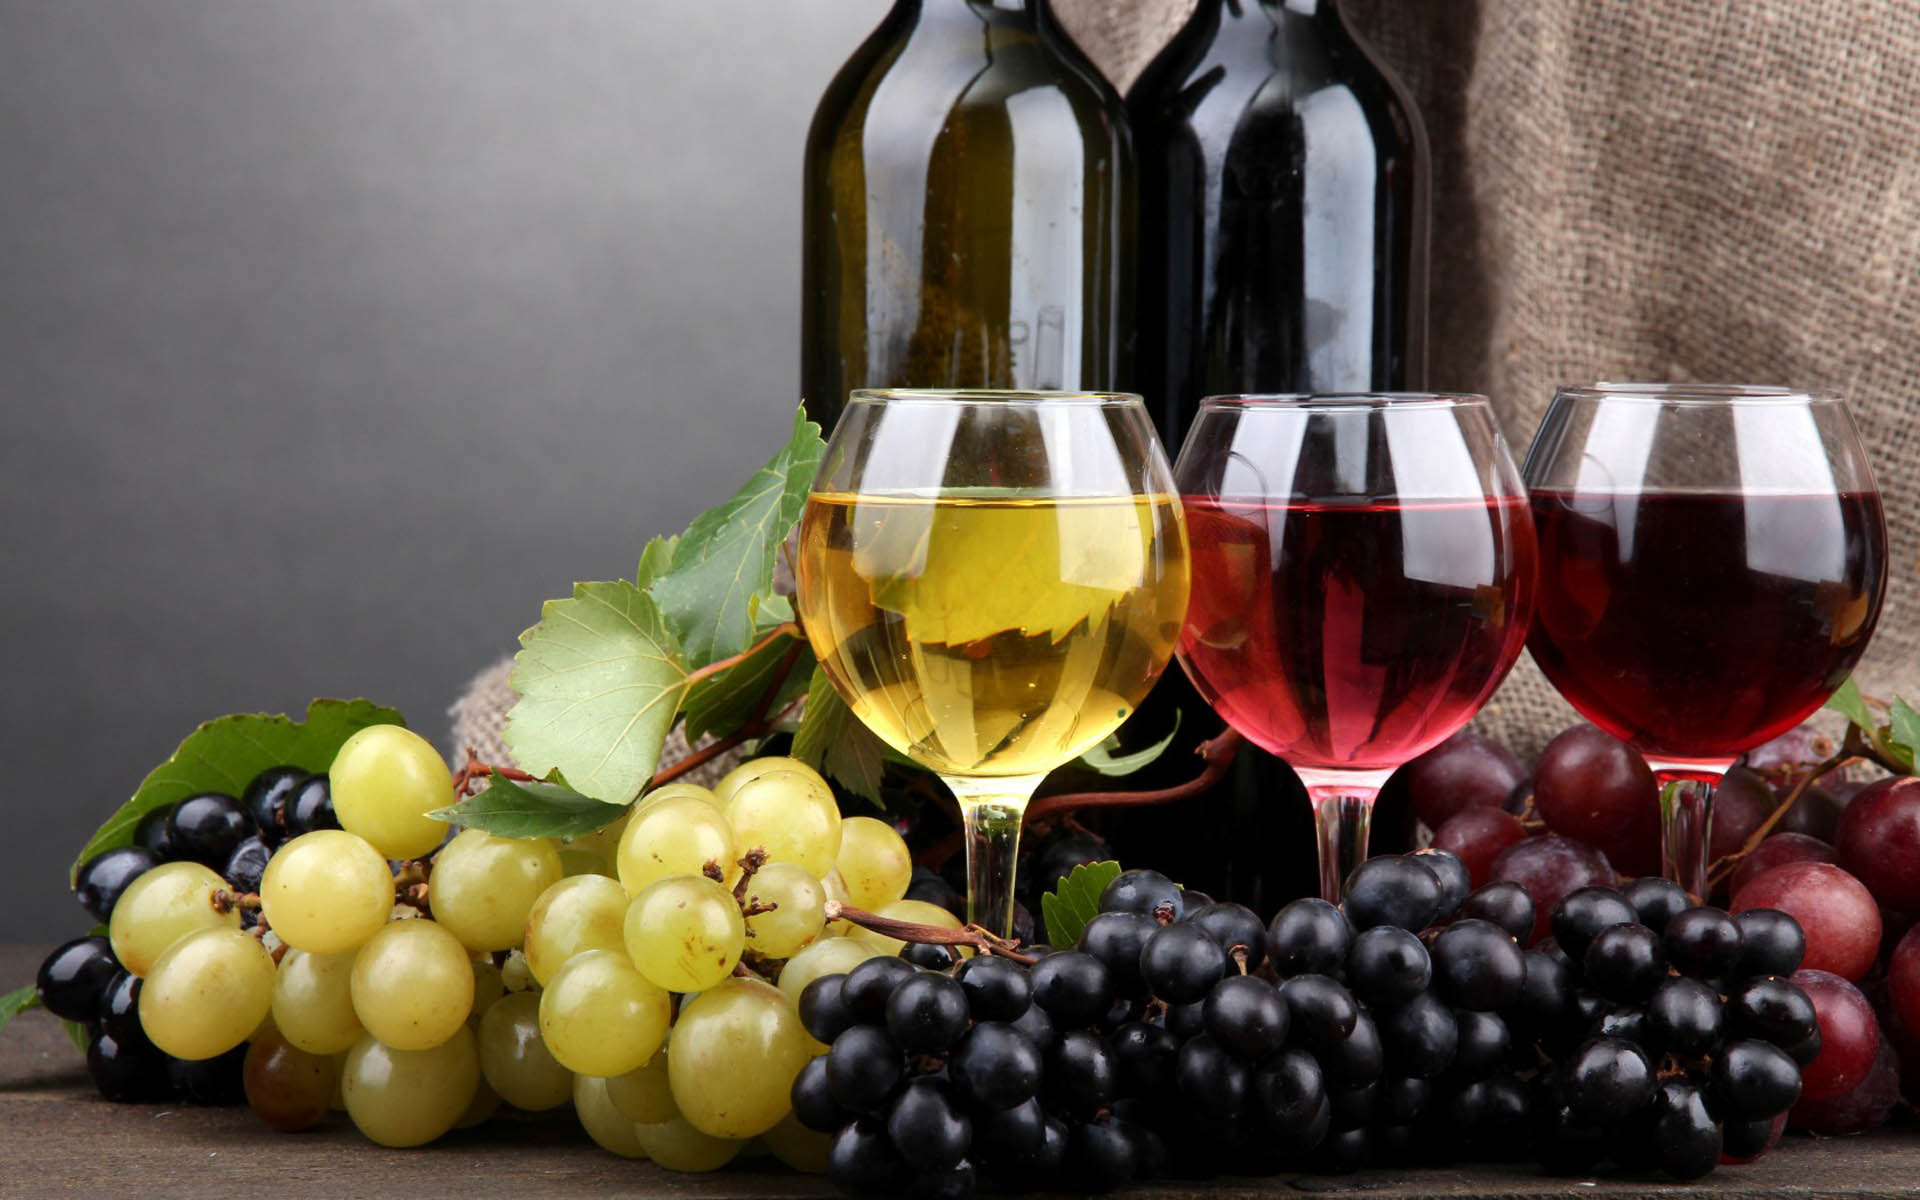 Закарпатське вино "Чизай" завоювало на міжнародному конкурсі всі золоті медалі